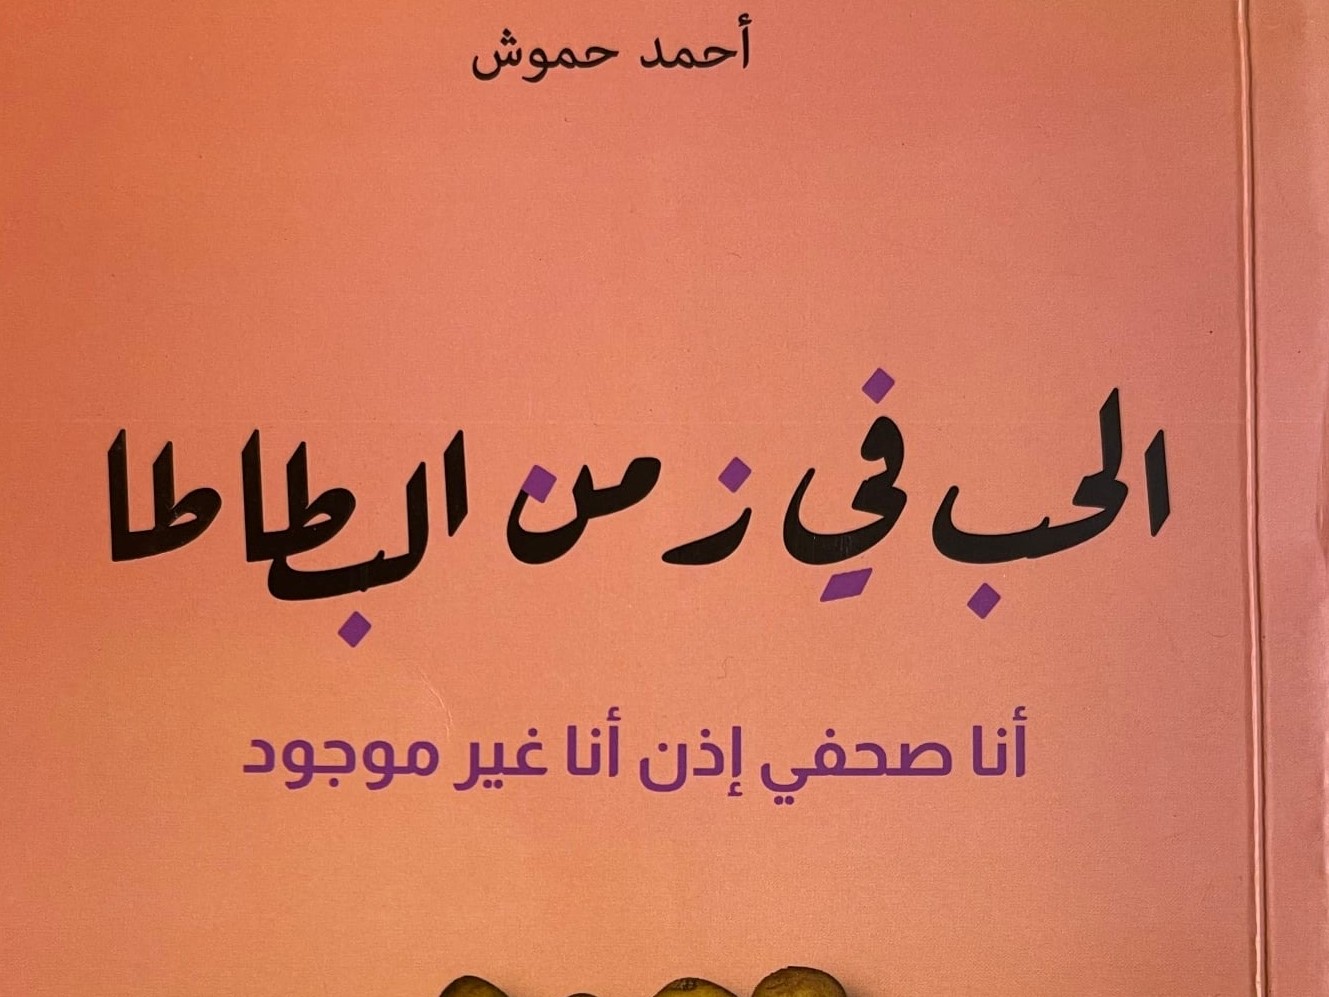 “الحب في زمن البطاطا”..كتاب “إنساني” حول تجربة الصحافي حموش